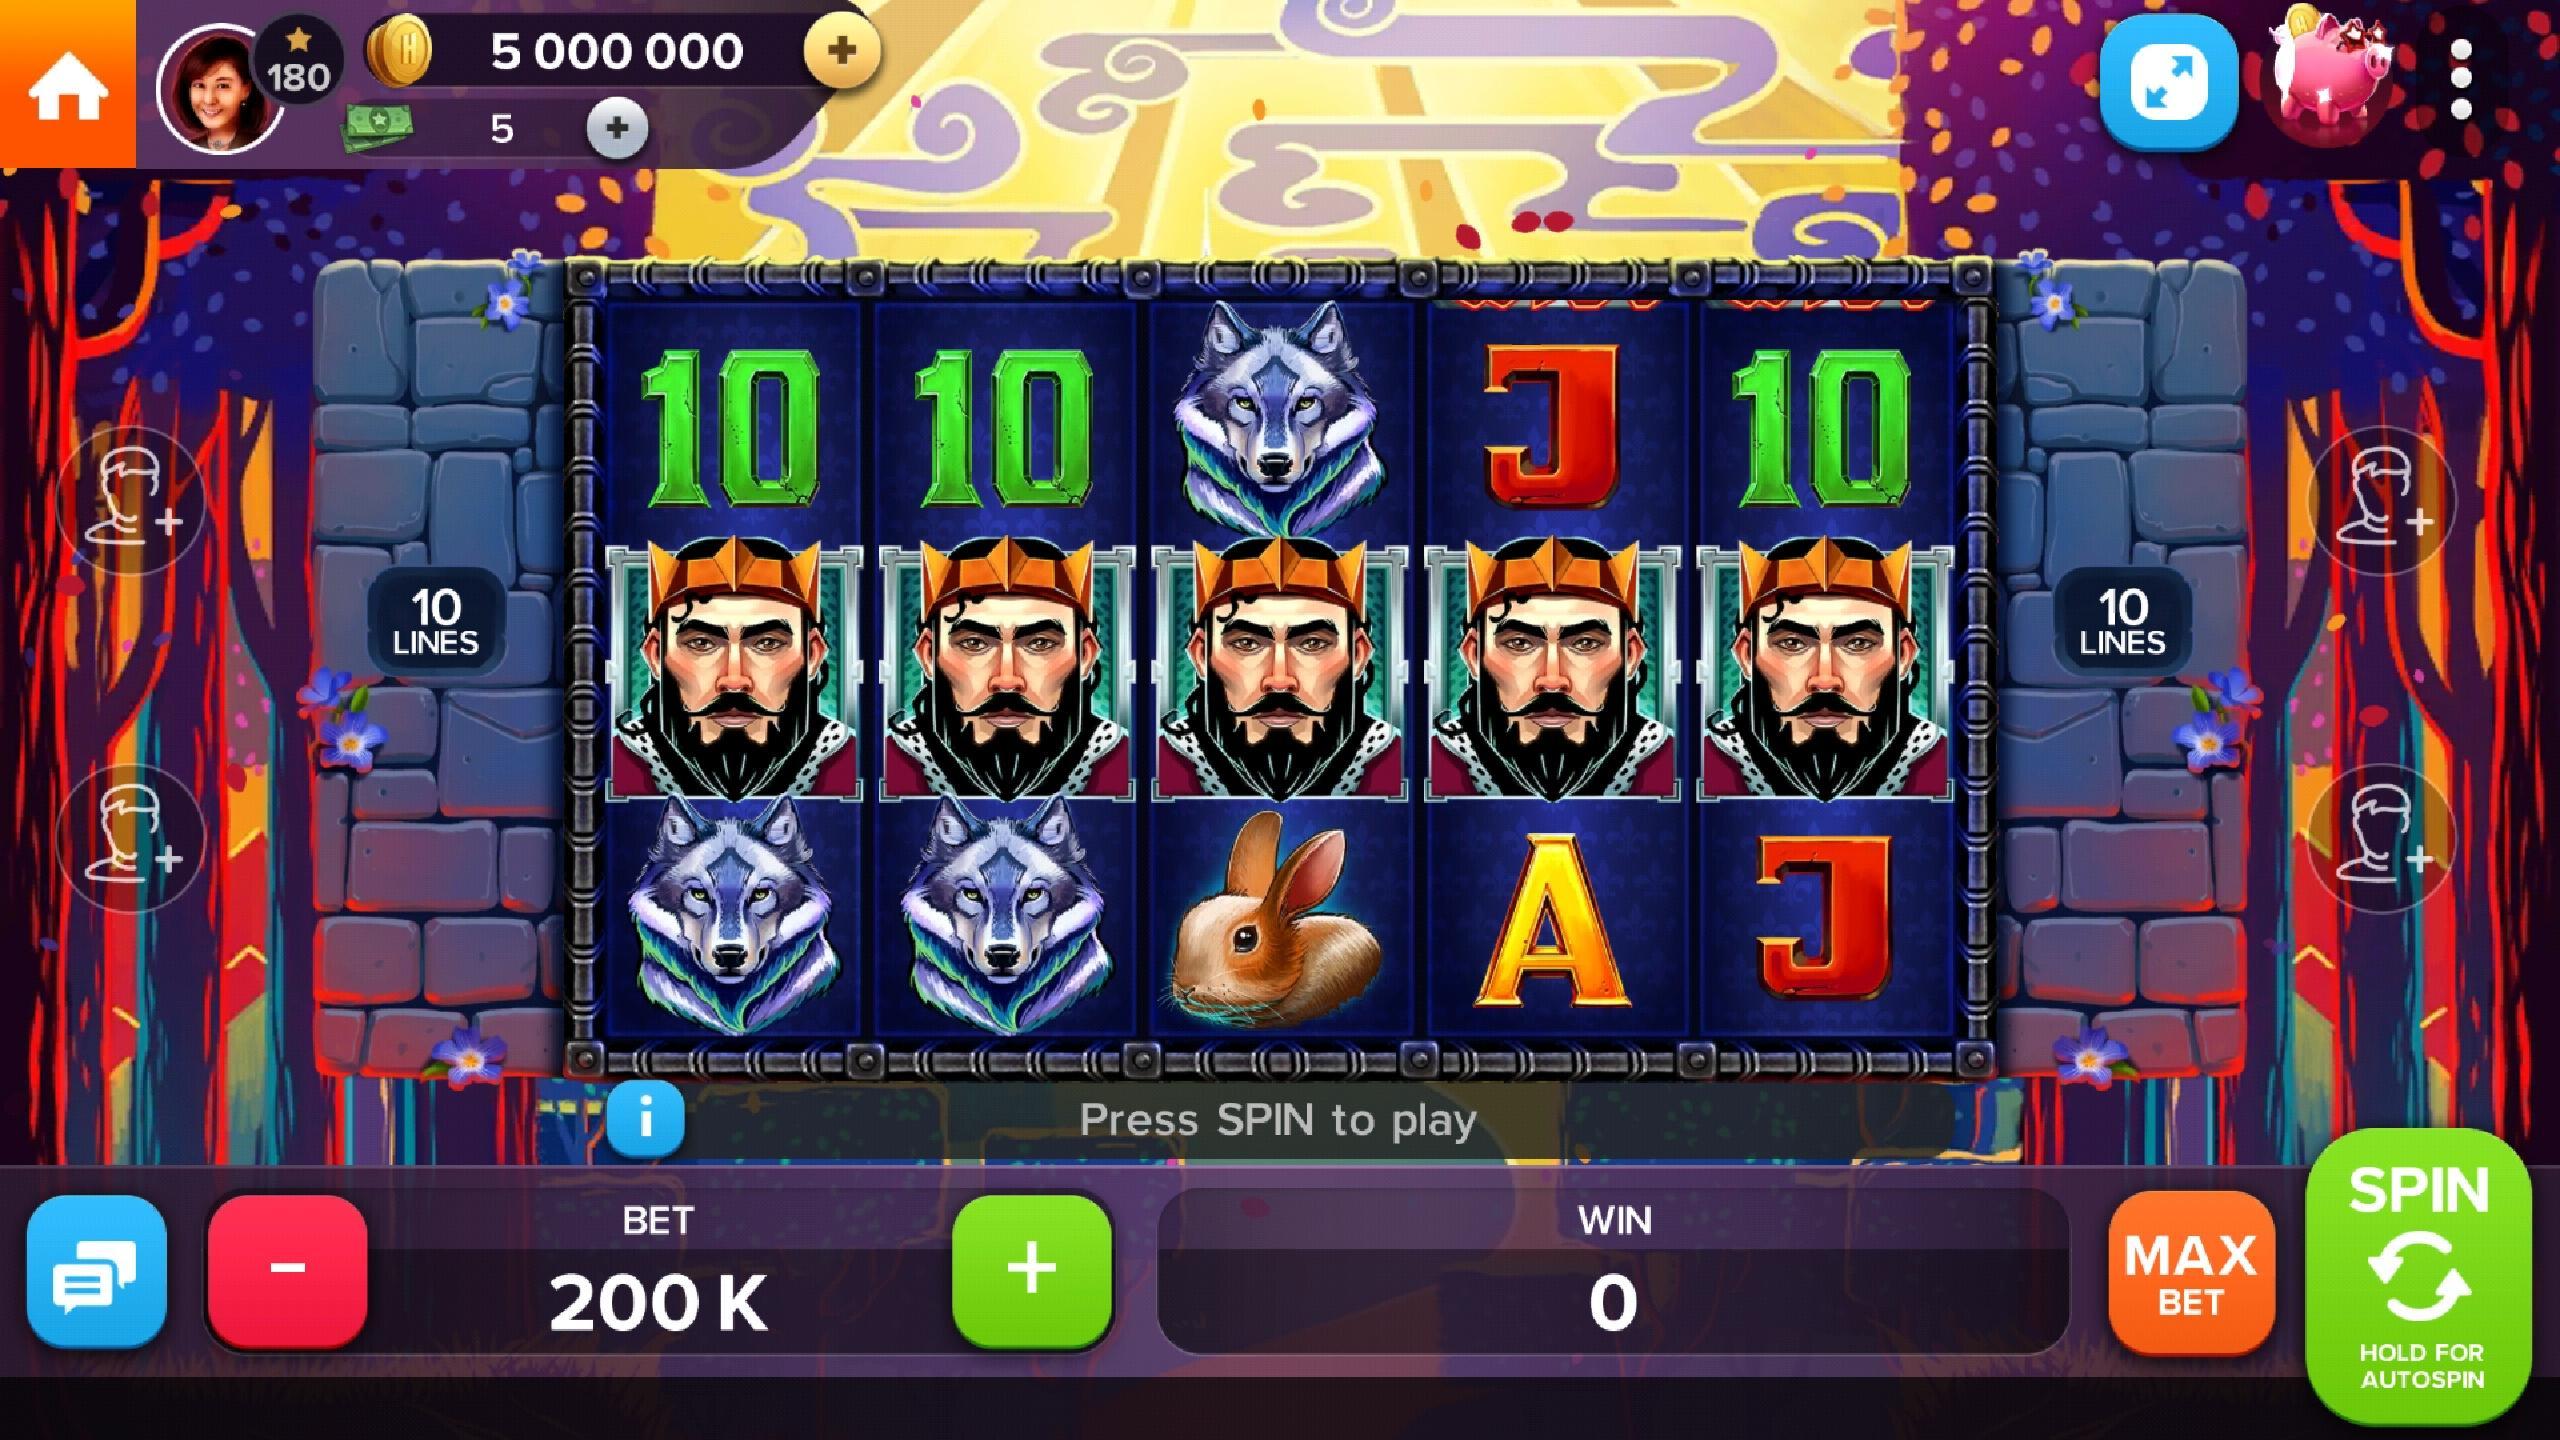 Stars Slots Casino - Vegas Slot Machines 1.0.1366 Screenshot 7